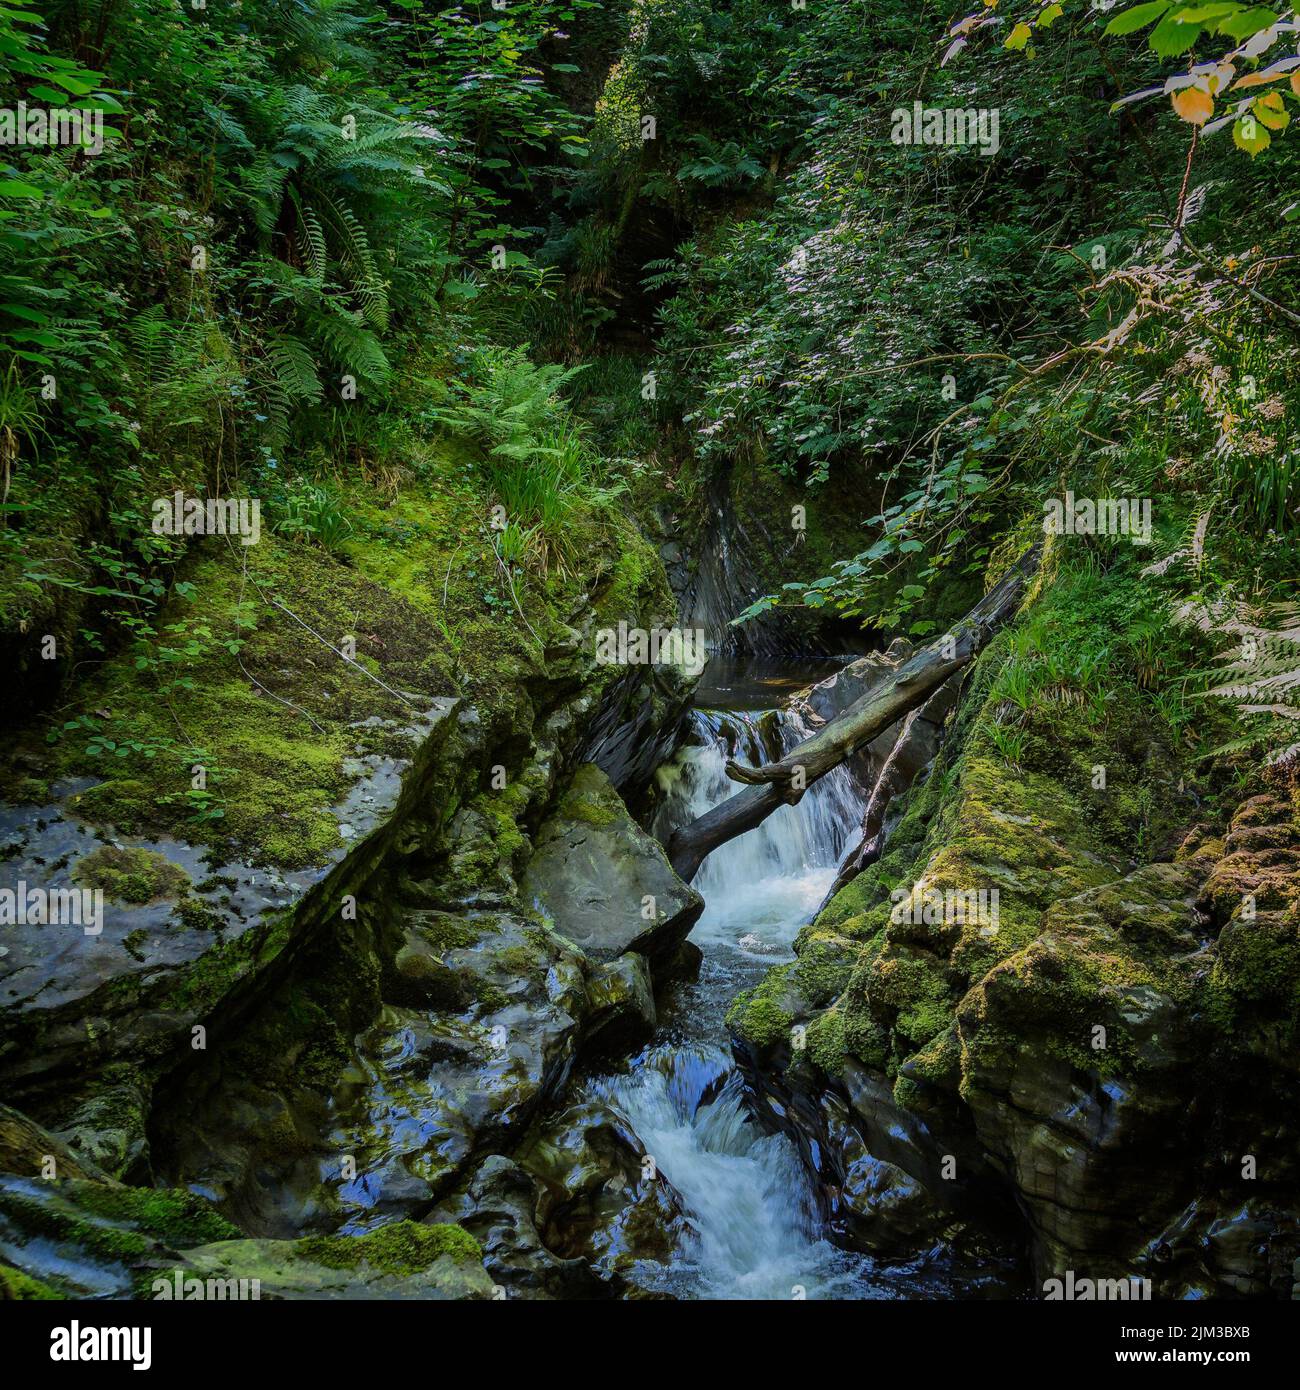 Un arbre déchu chevauchant une rivière en cascade au milieu d'une forêt dense et de roches moussy altérées, portées sans à-coups par l'eau qui coule. Banque D'Images